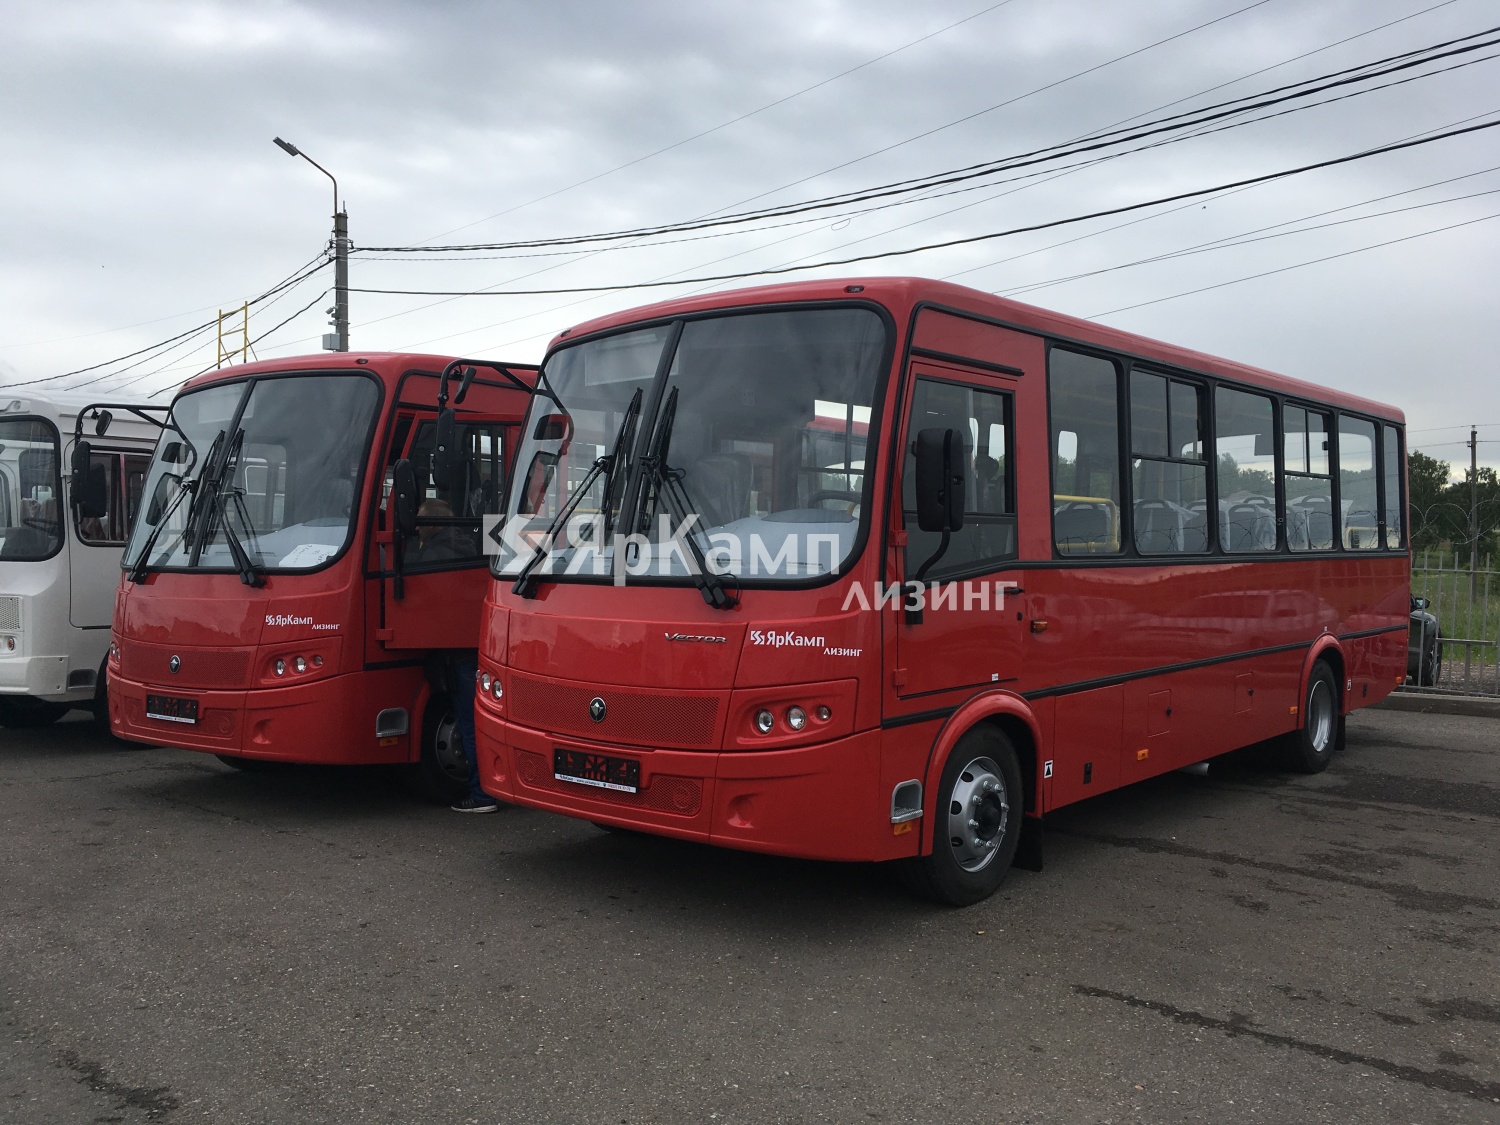 Автобусы ПАЗ Vector переданы в лизинг